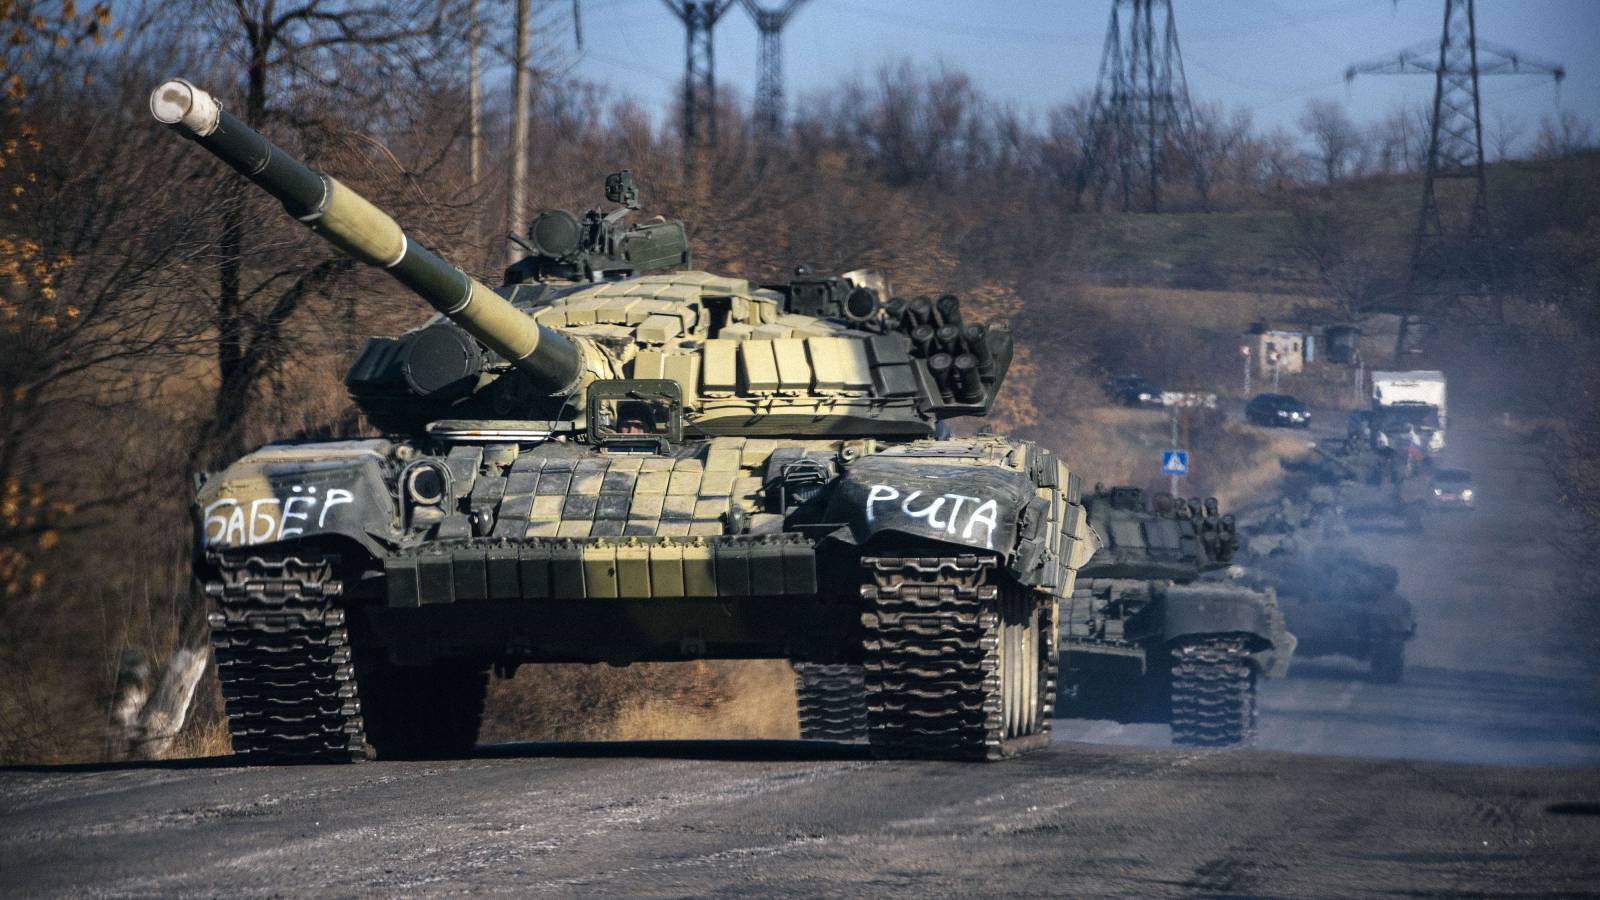 10 ryska arméattacker som avvisades av Ukraina, dussintals fordon förstördes